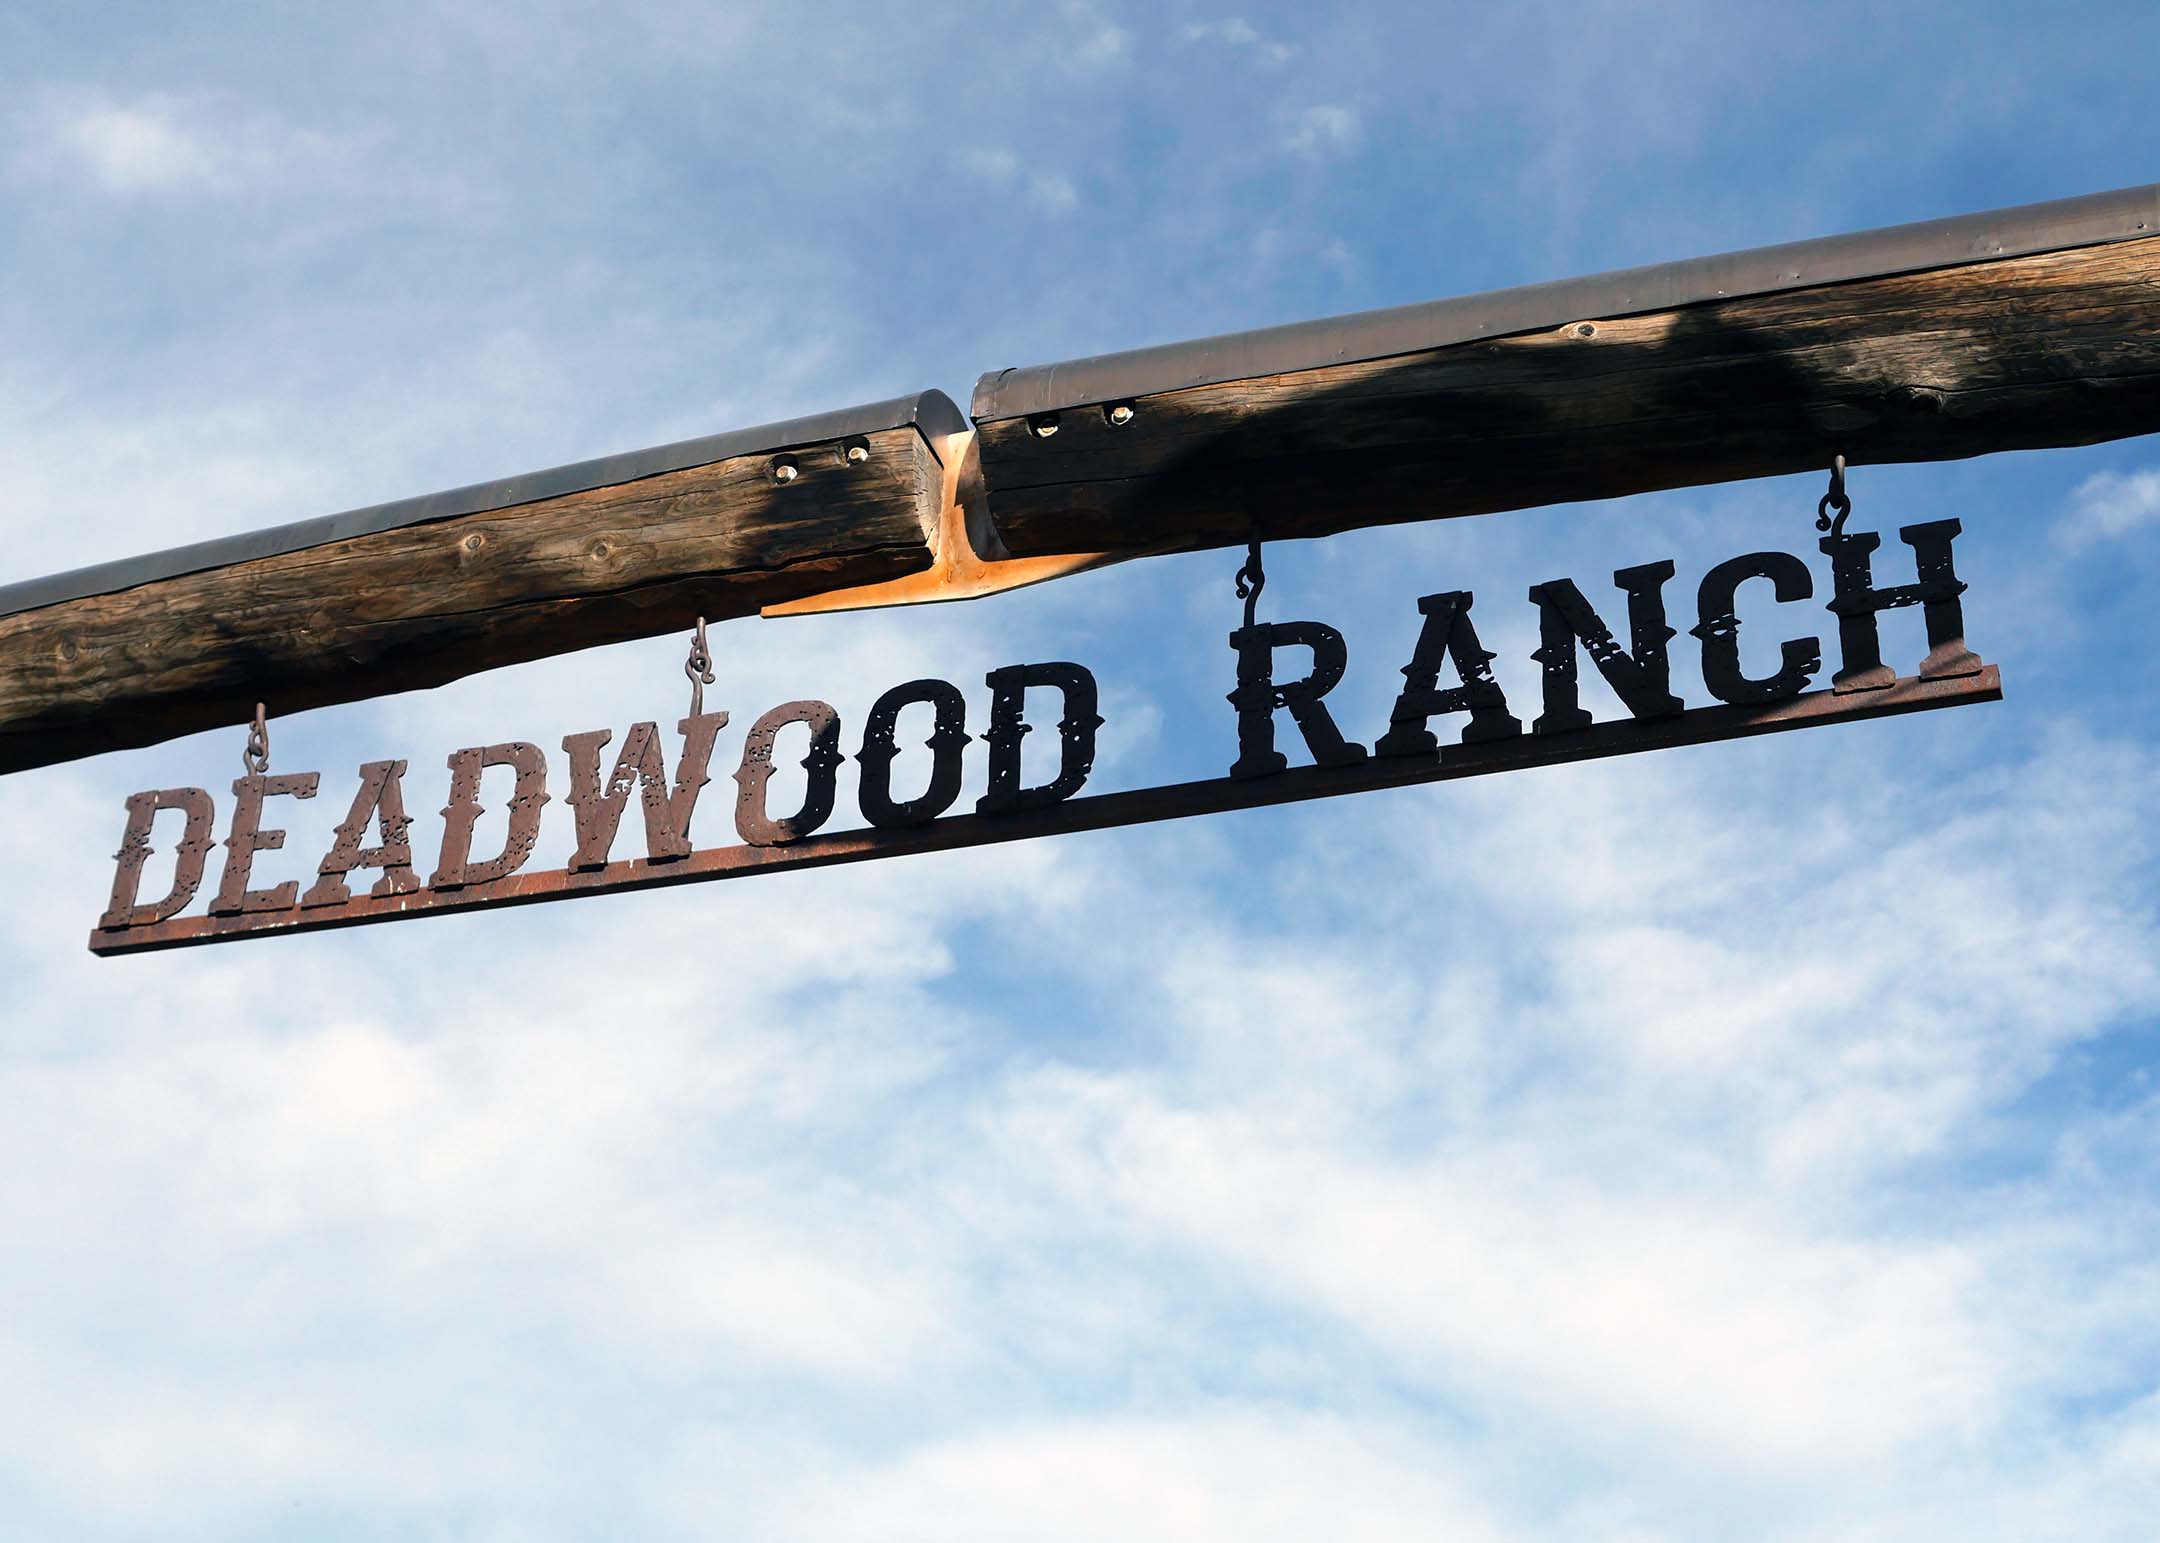 Deadwood Ranch